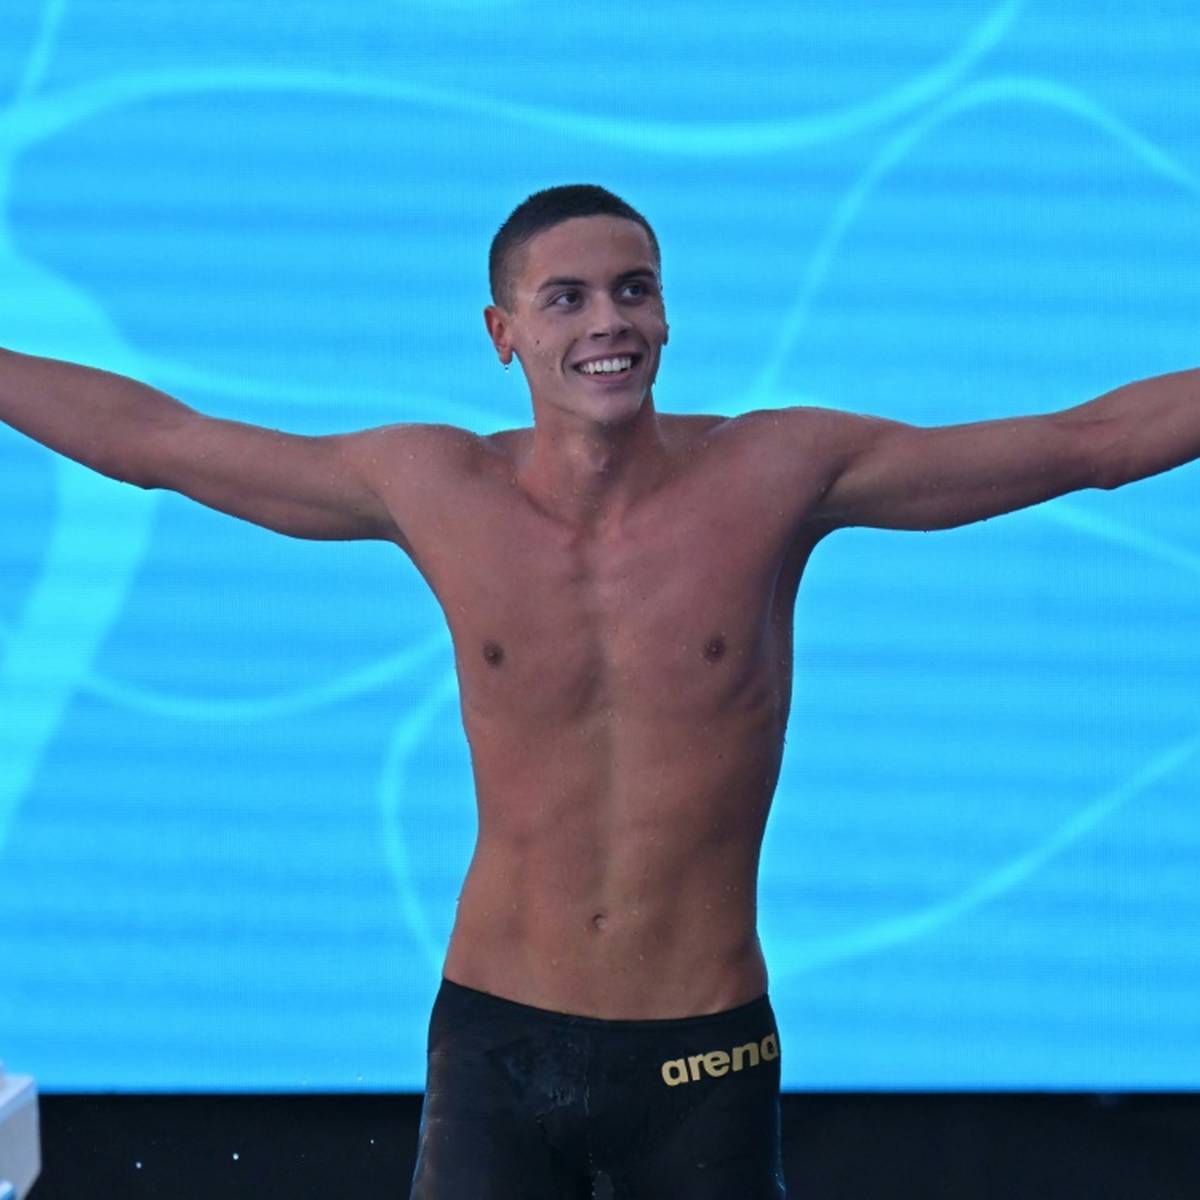 Doppel-Weltmeister David Popovici hat bei der Schwimm-EM in Rom den ersten Weltrekord aufgestellt. Der 17-jährige Rumäne siegte im Finale über 100 m Freistil.